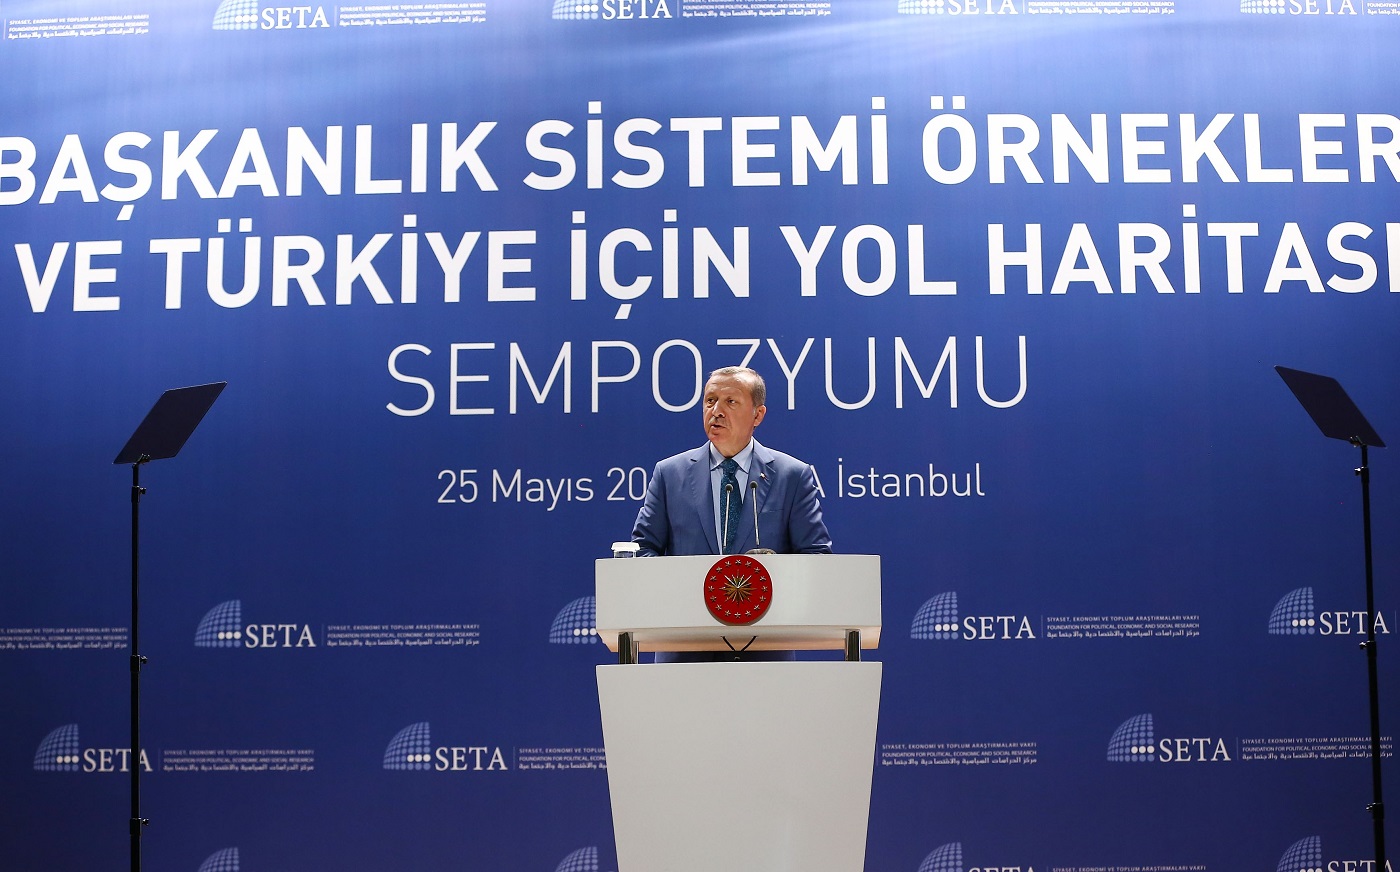 نظام الحكم الجمهوري الرئاسي  والتحول الديمقراطي في تركيا